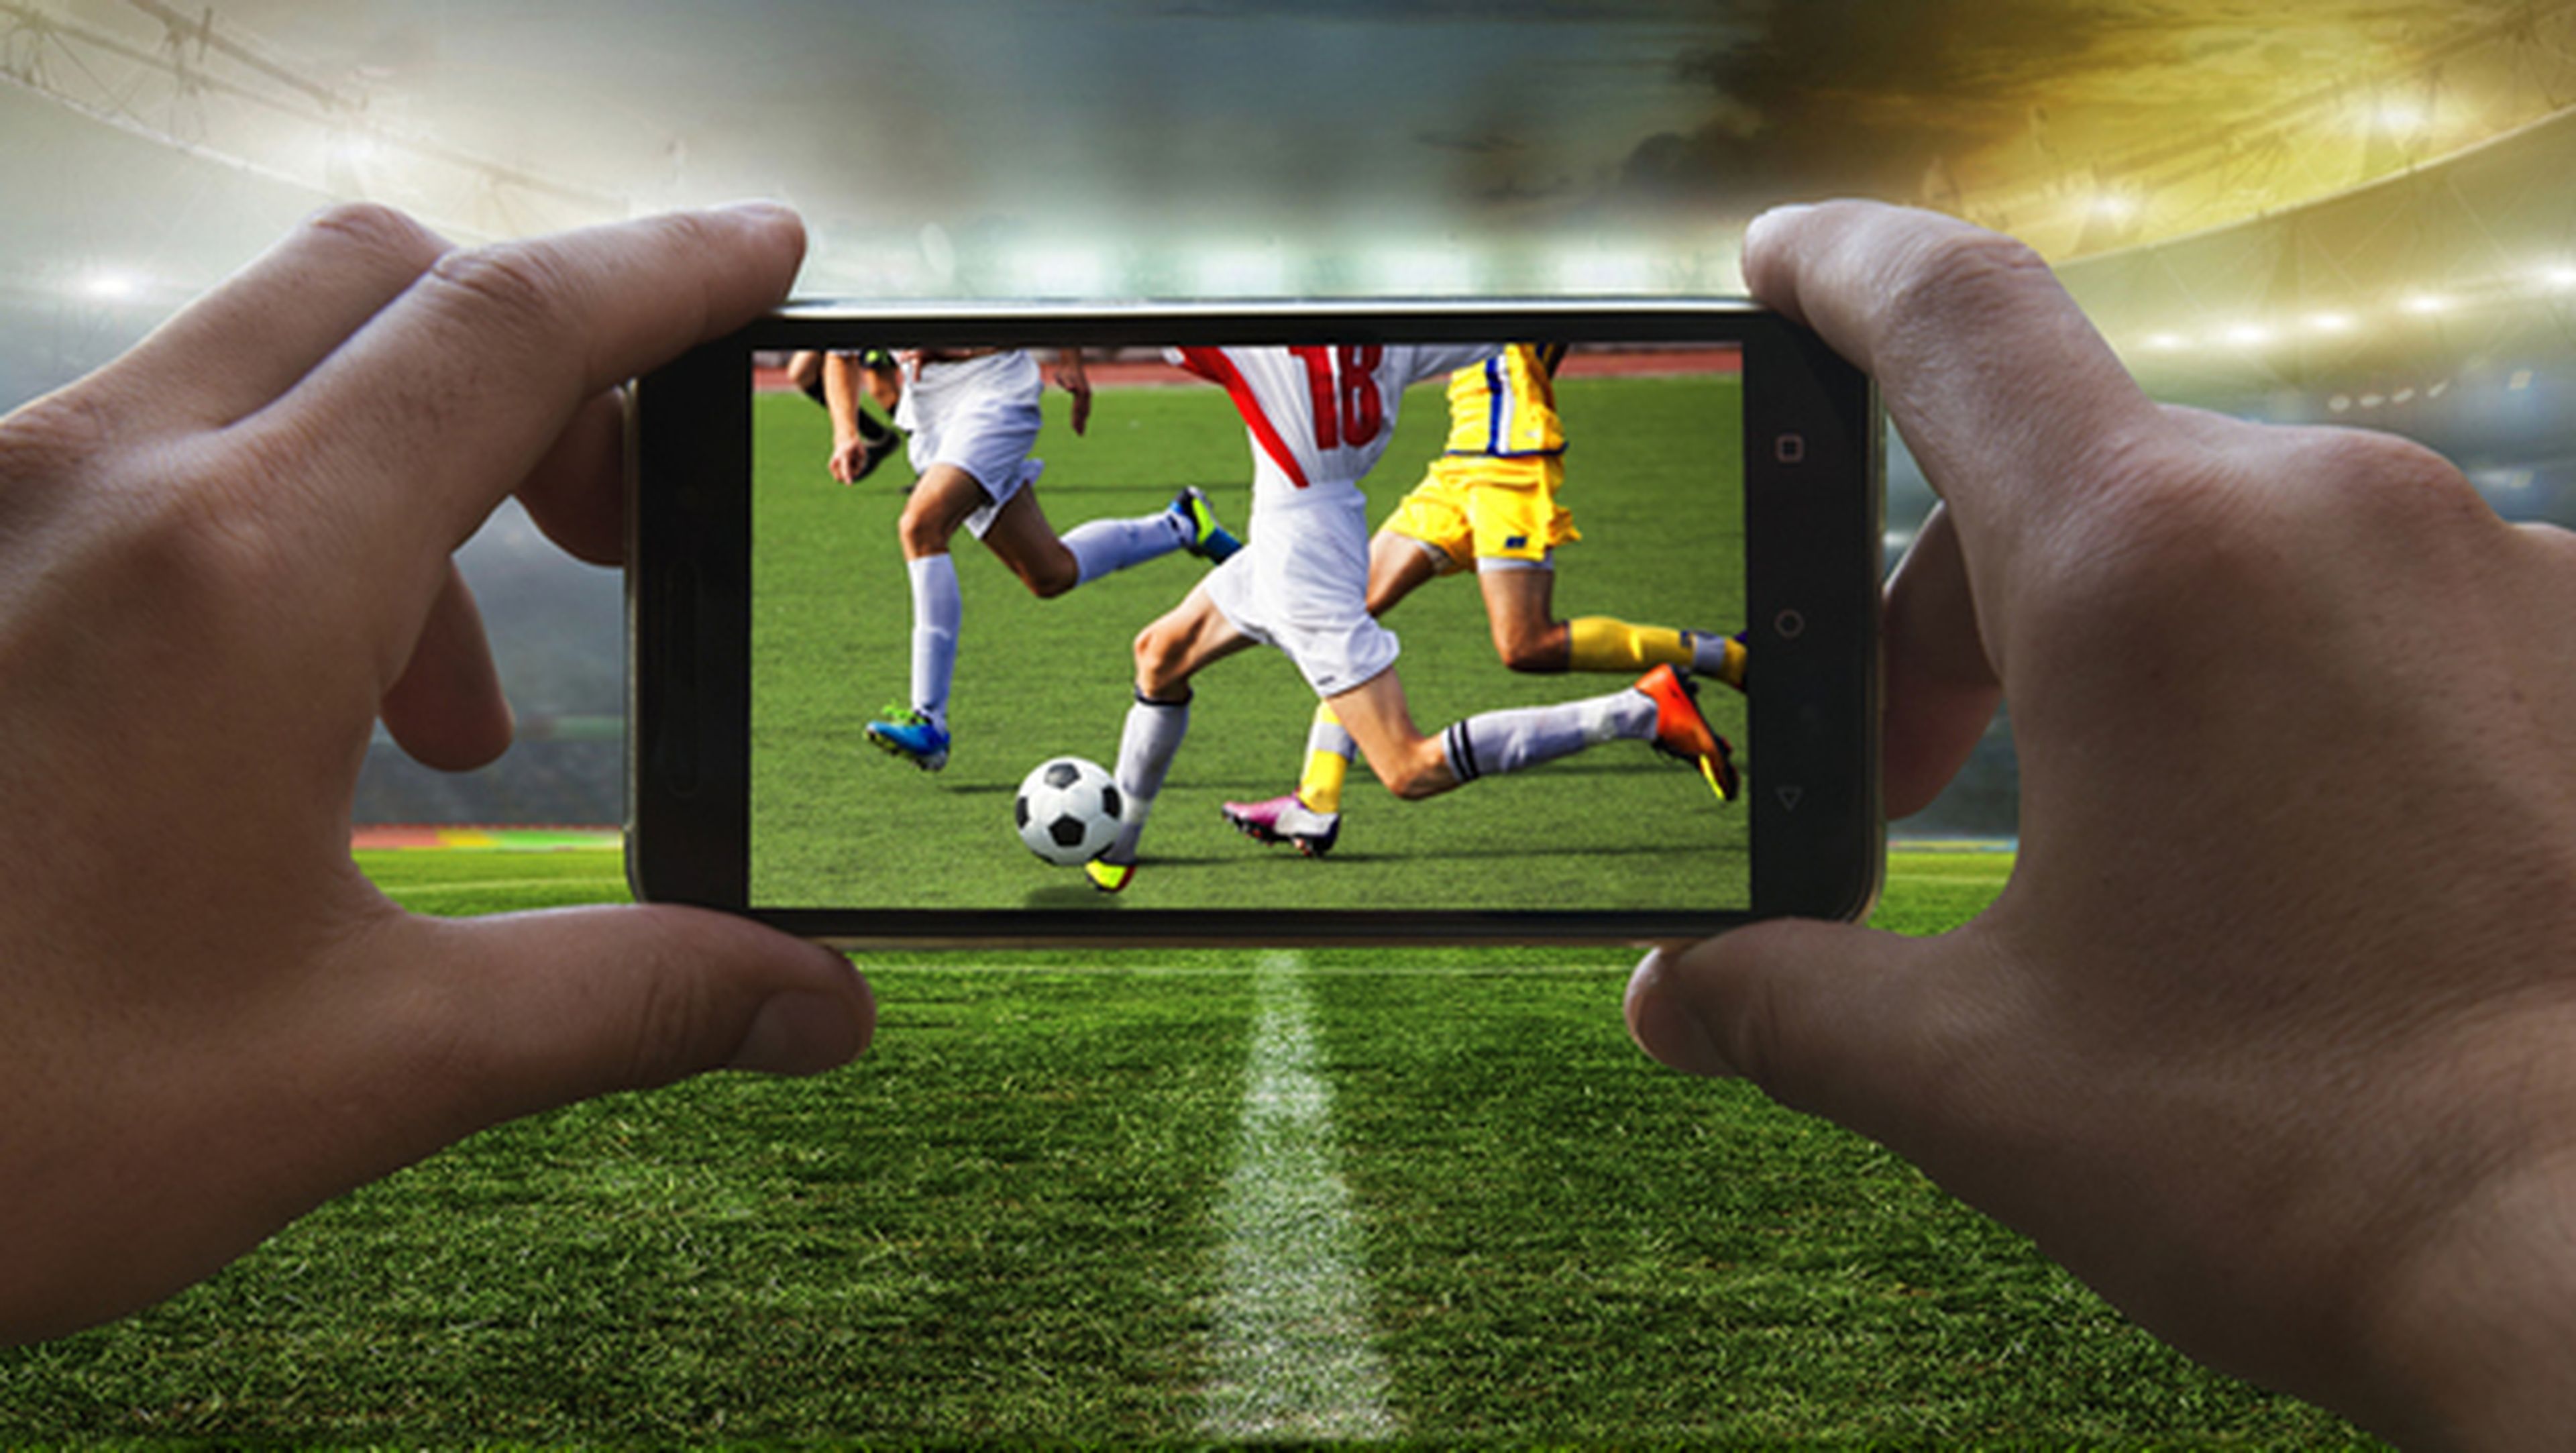 ver futbol online, como ver futbol online, todo el futbol online, streaming futbol